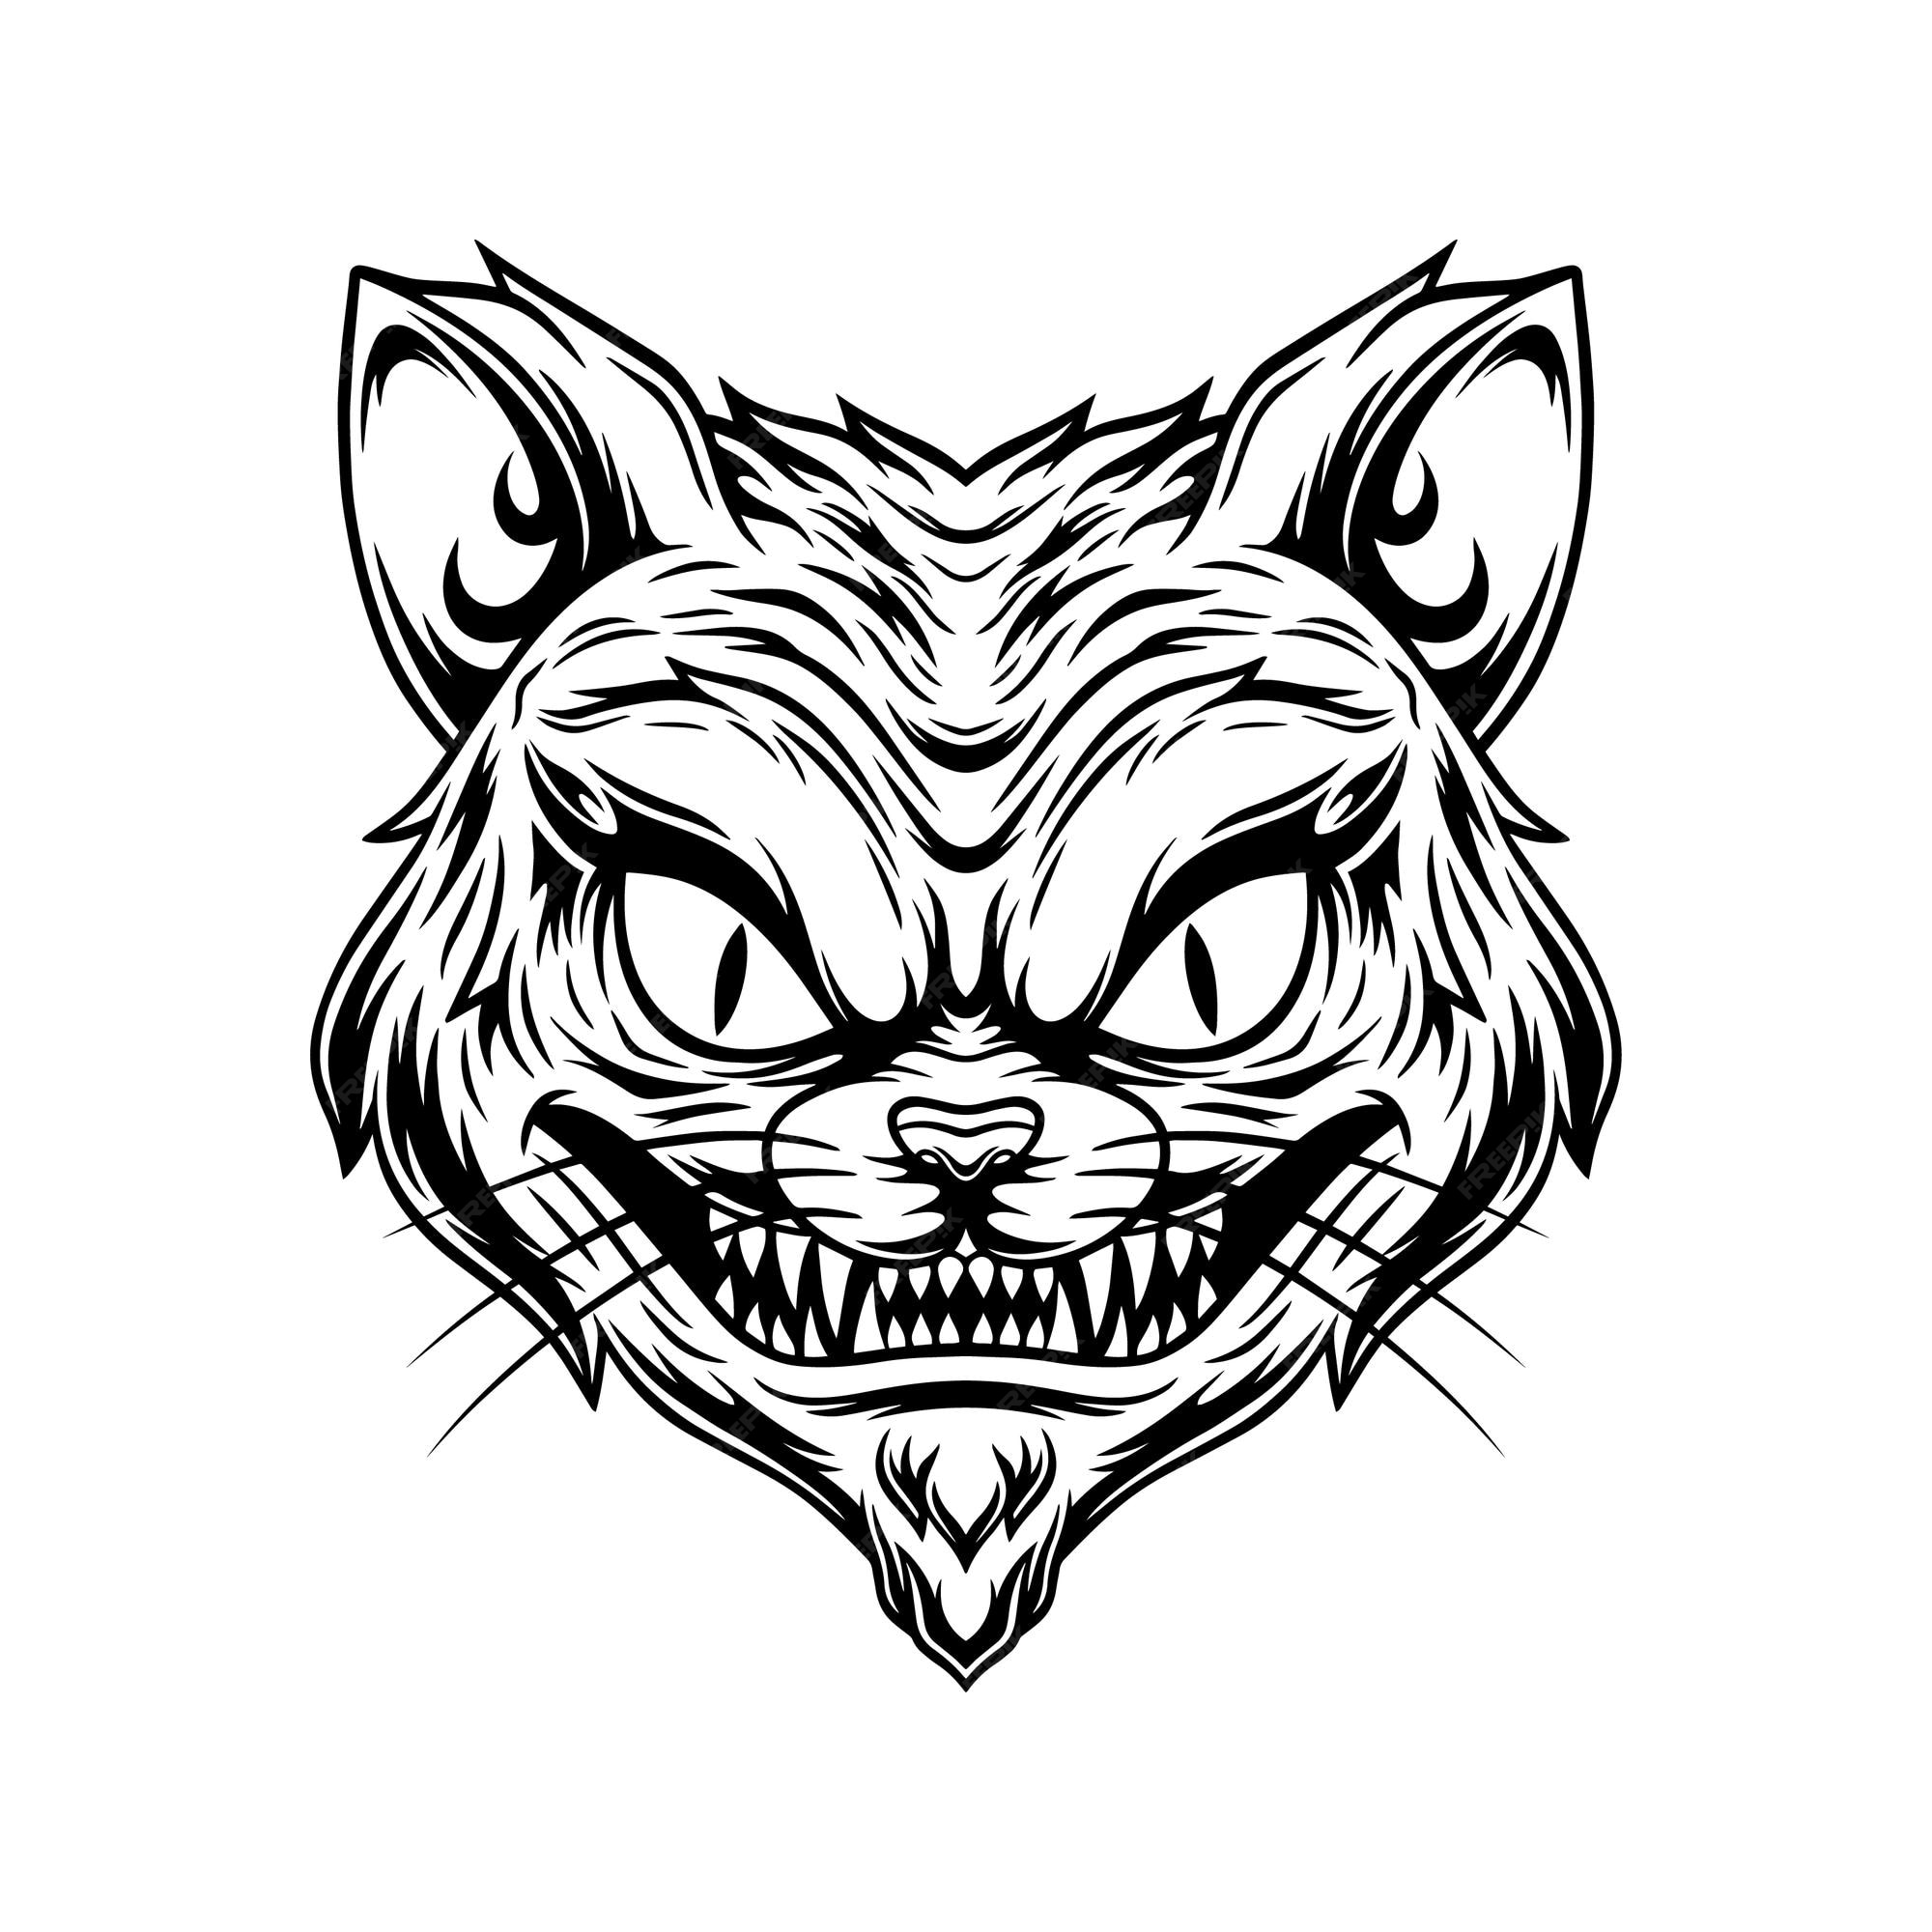 Premium Vector  Cute cat angry face cartoon mascot logo